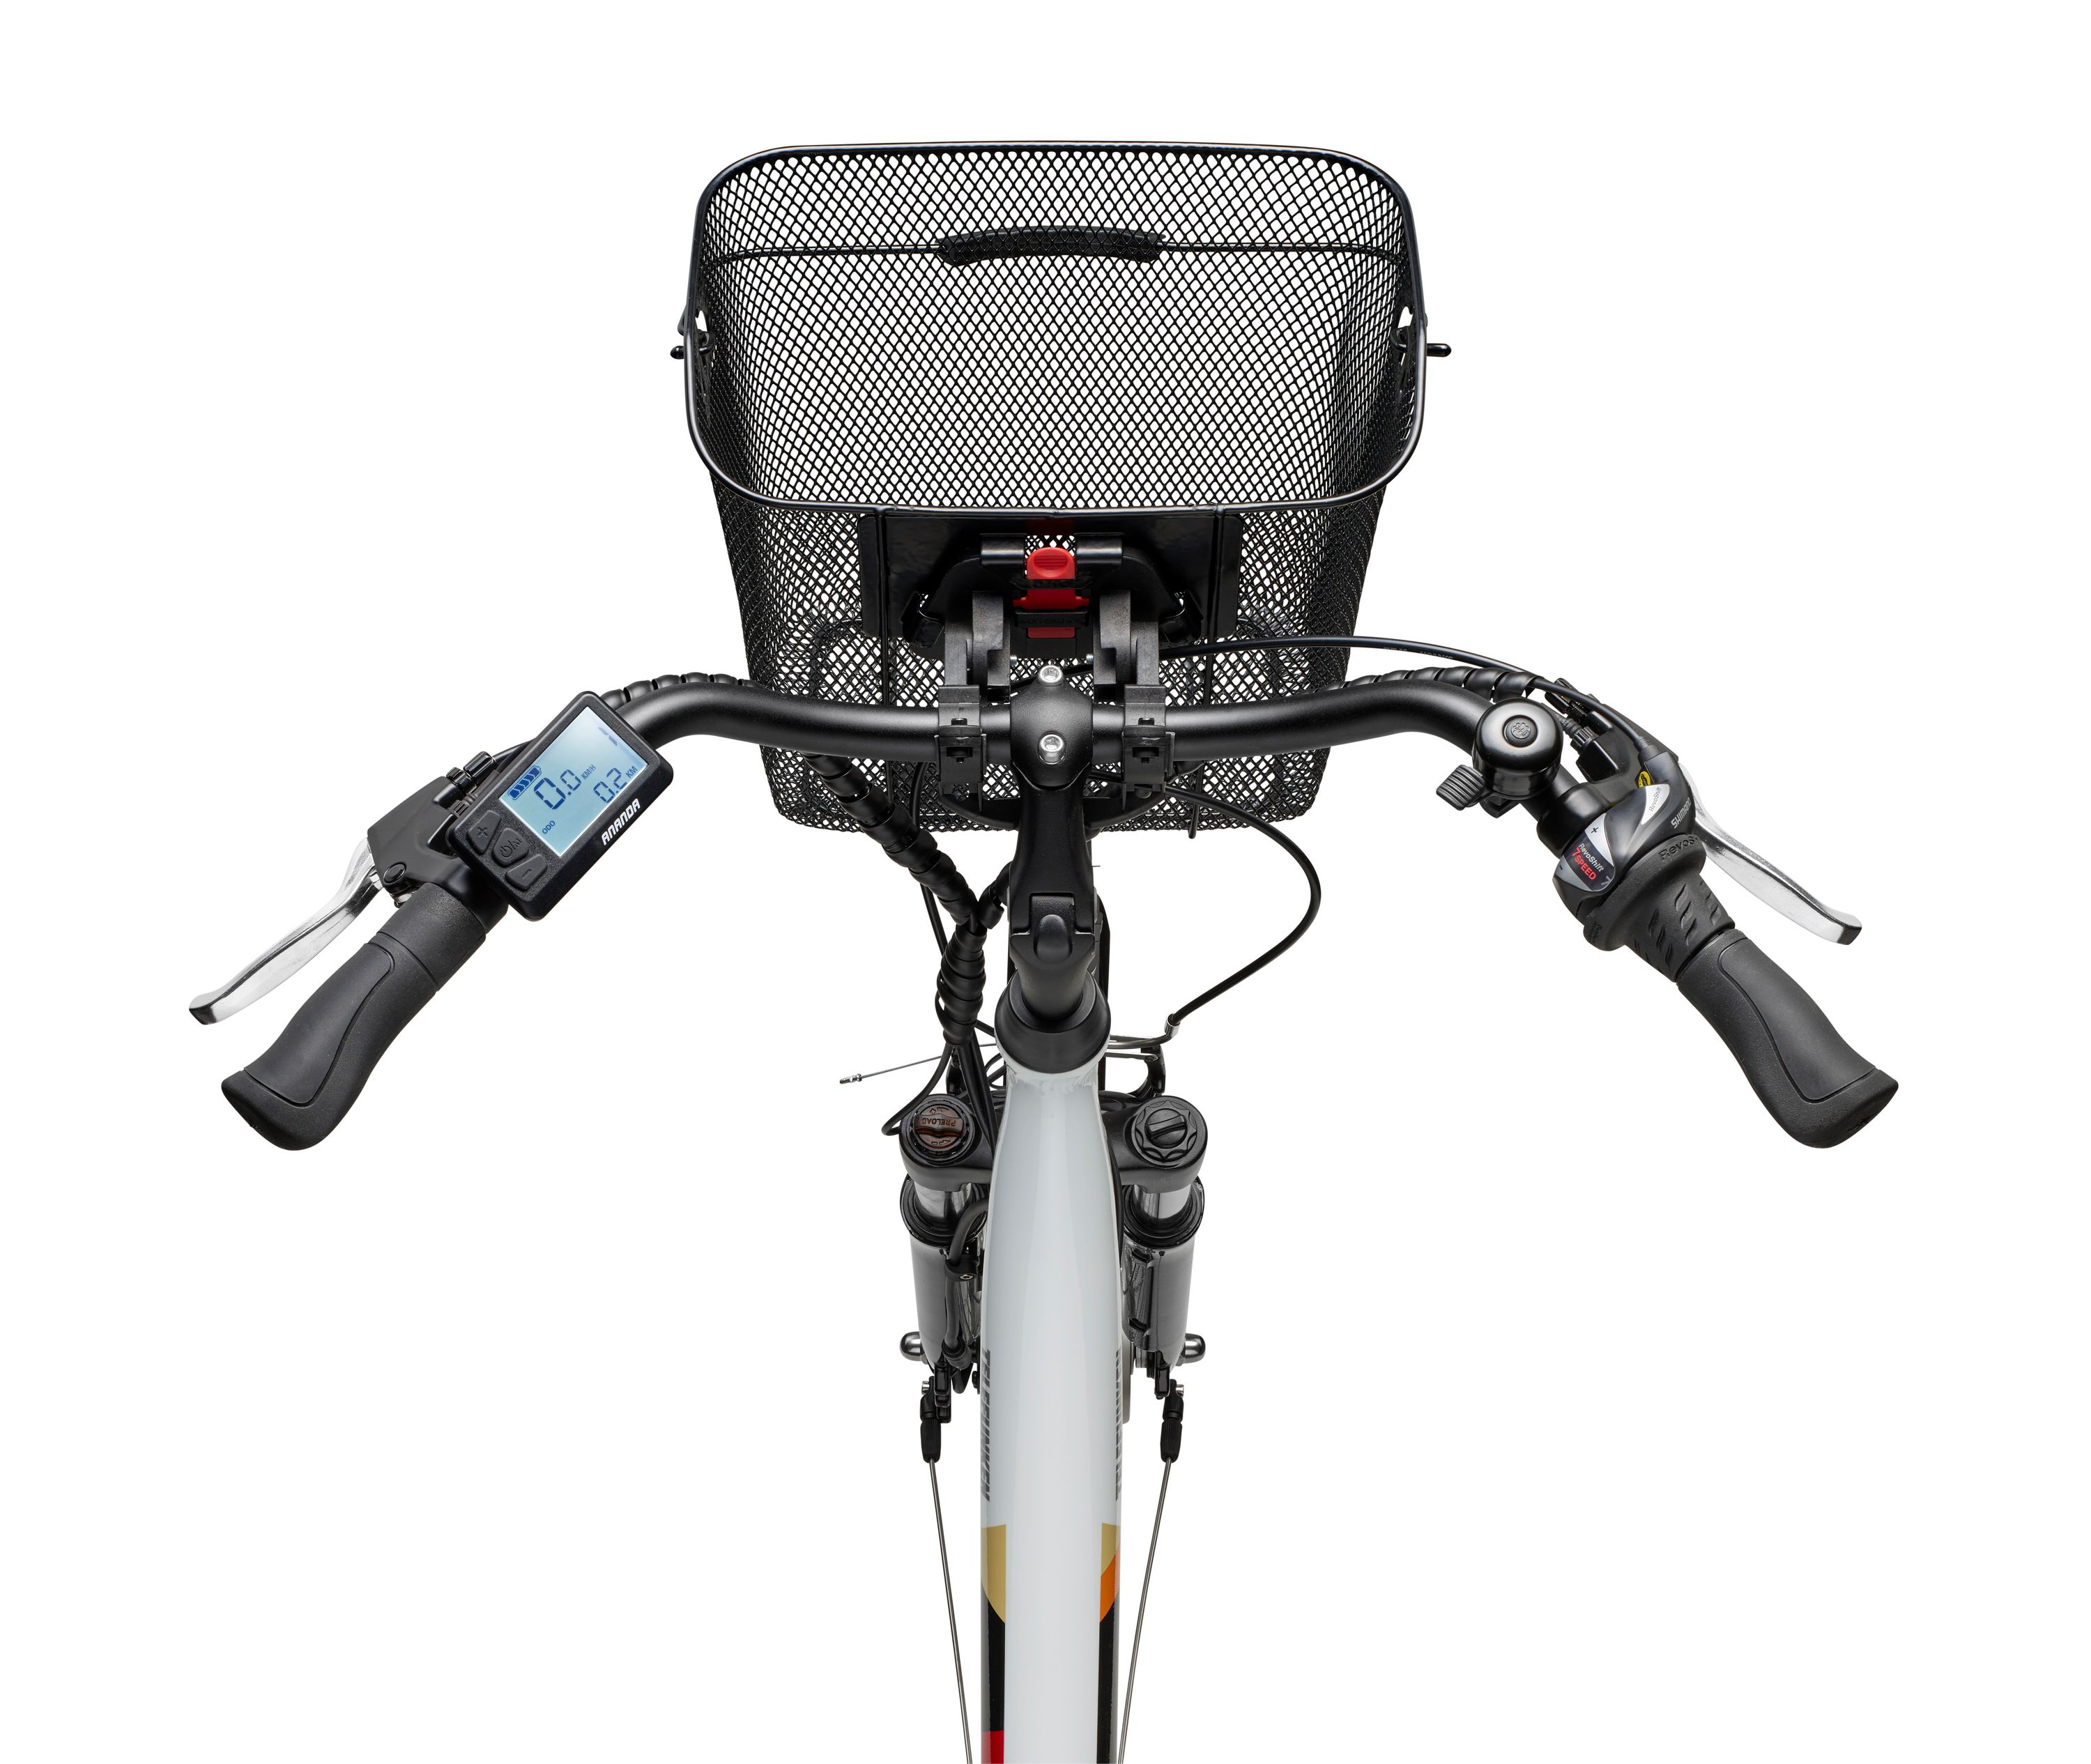 TELEFUNKEN Multitalent Unisex-Rad, Zoll, RC822 (Laufradgröße: 10,4, 28 Weiß) Citybike